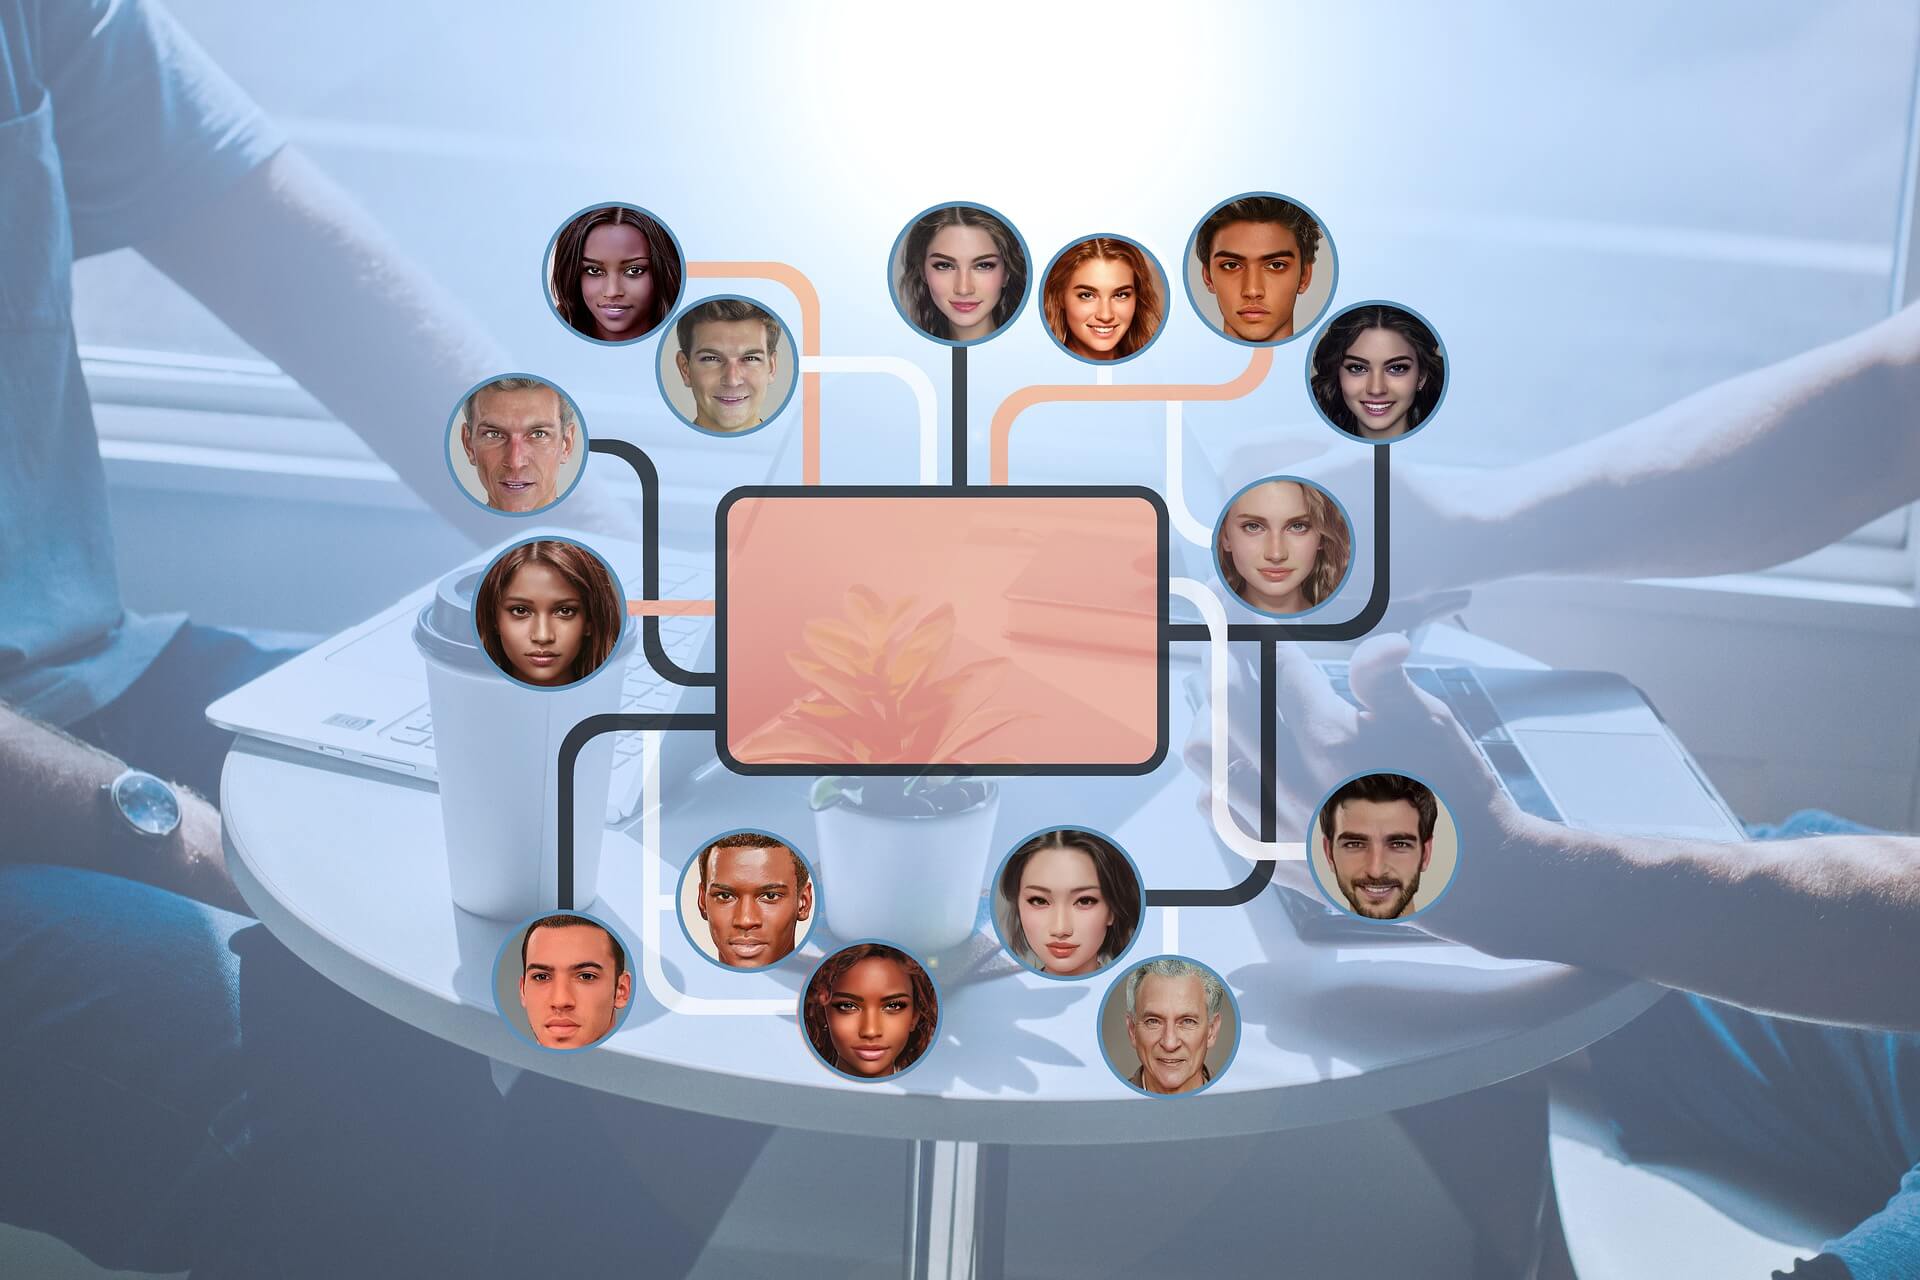 图片展示多个不同人种的人脸头像，围绕在一个中心的屏幕周围，屏幕显示一朵花，背景模糊，给人科技感。